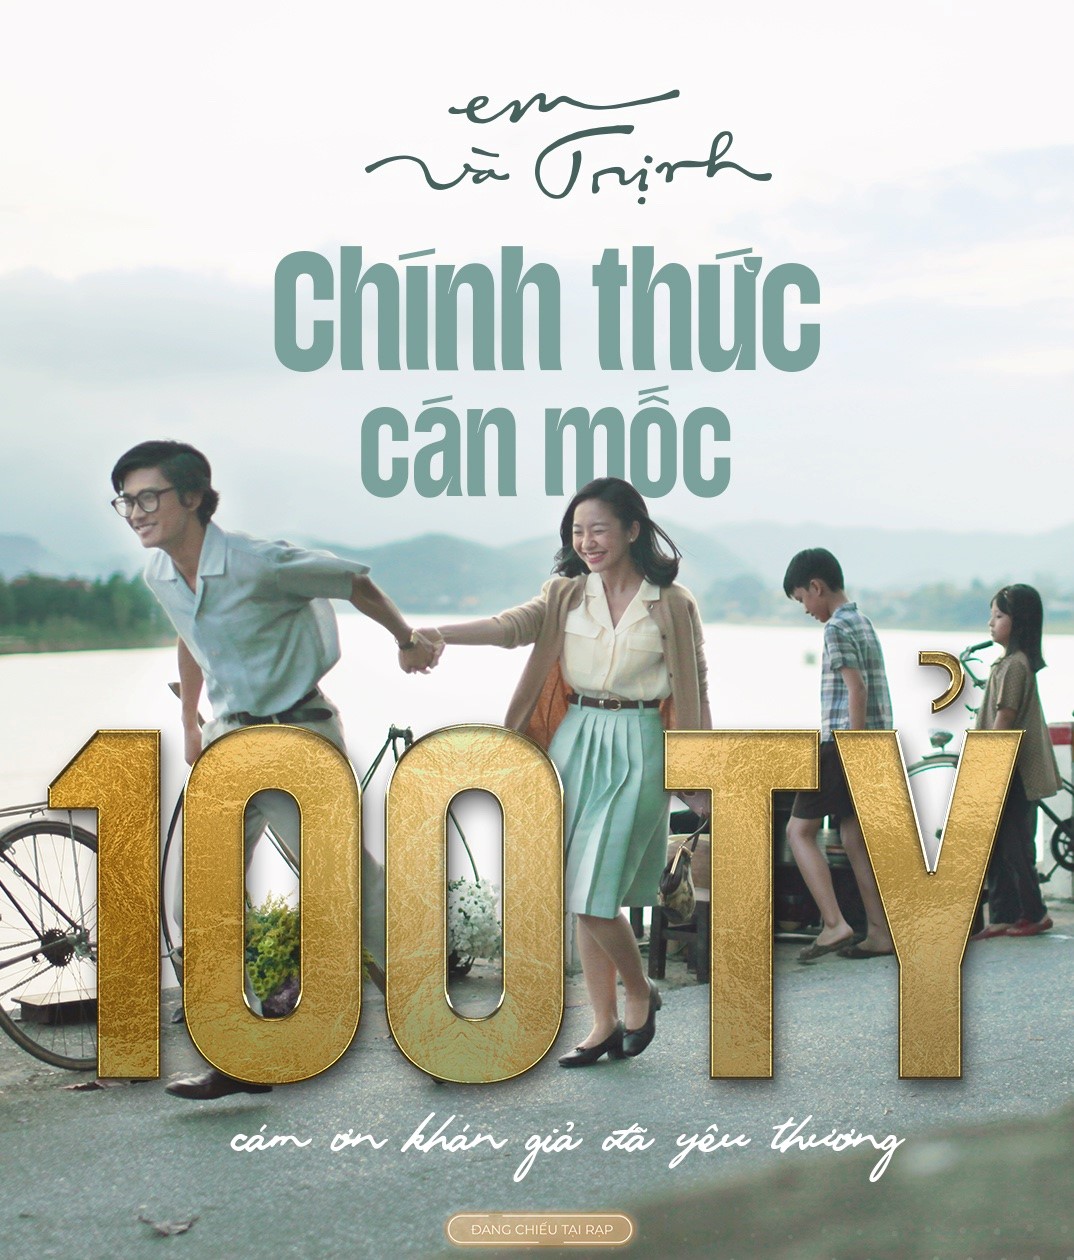 "Doanh thu phim Em và Trịnh" cán mốc 100 tỷ: Hành trình từ tranh cãi đến thành công